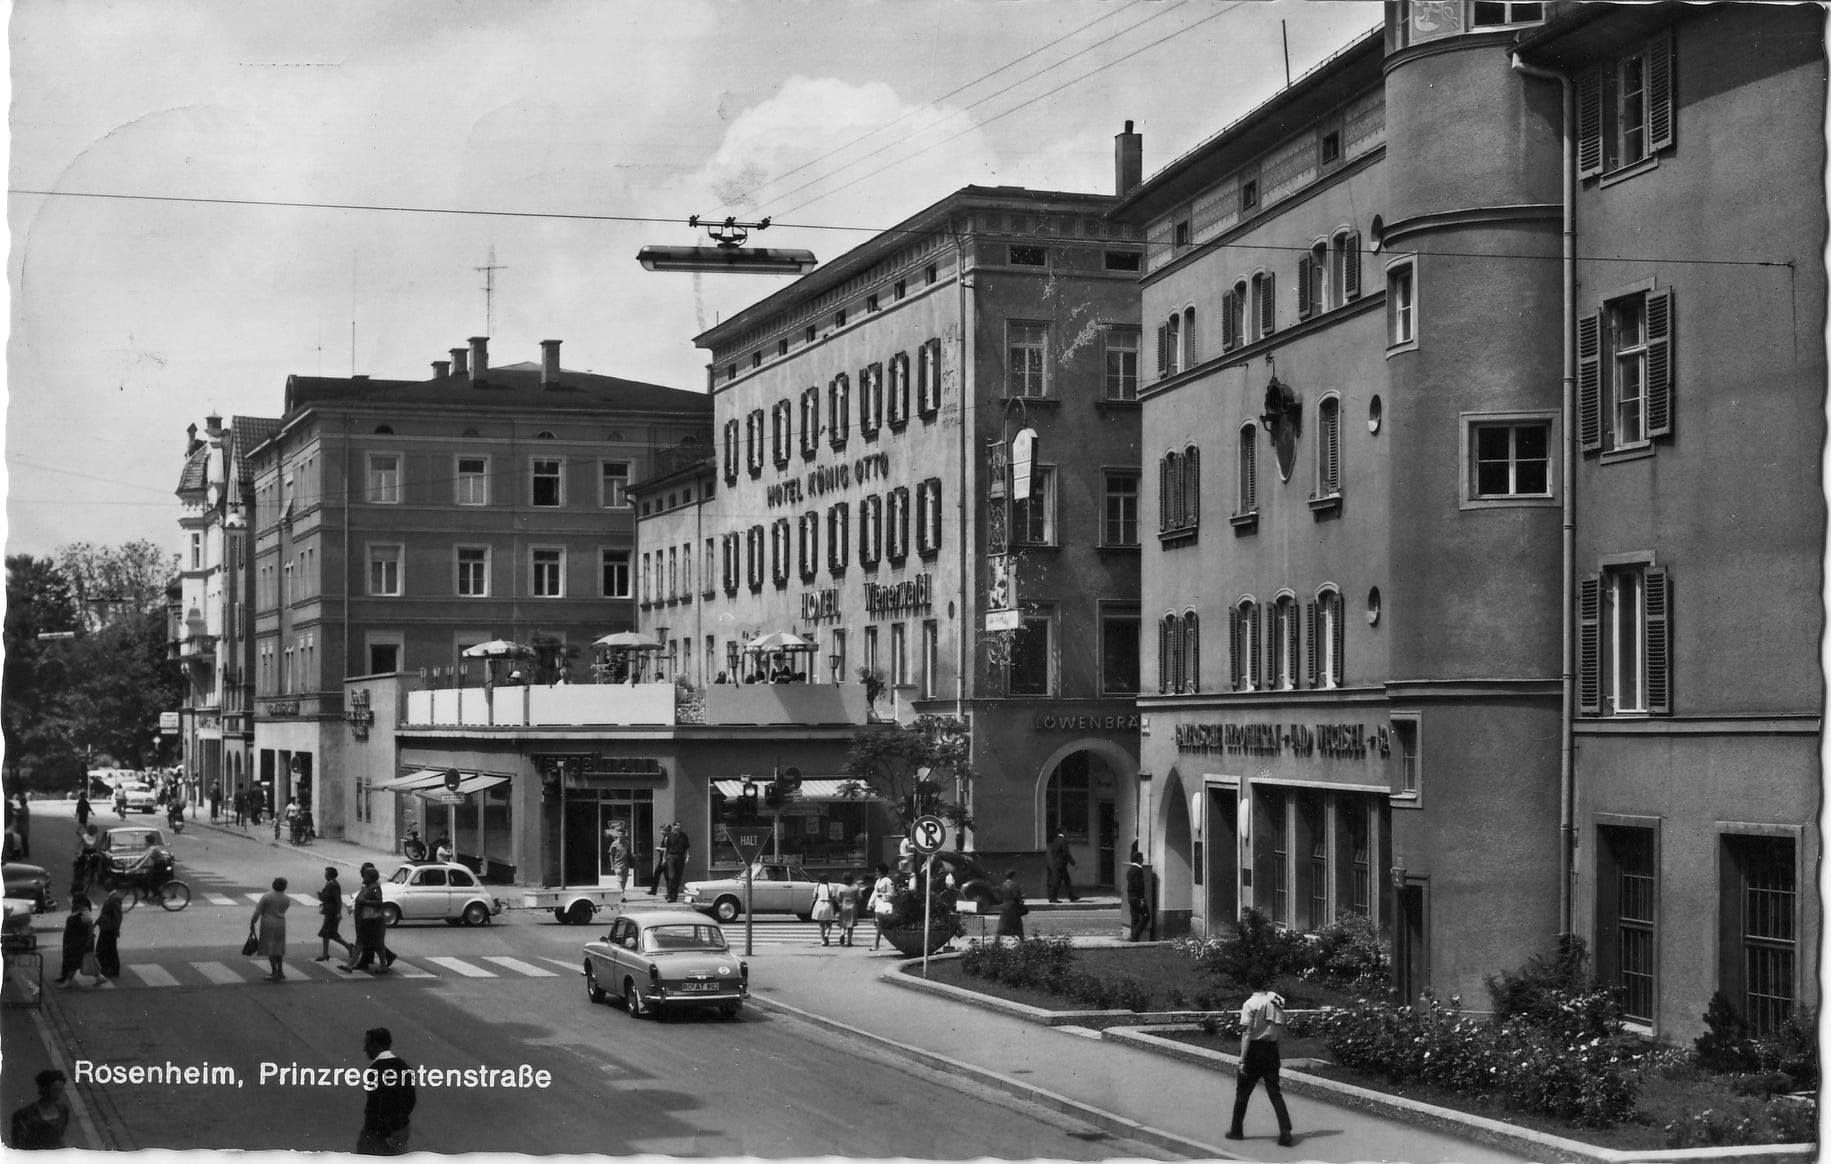 Koenig-Otto-Kreuzung in Rosenheim im Jahr 1968